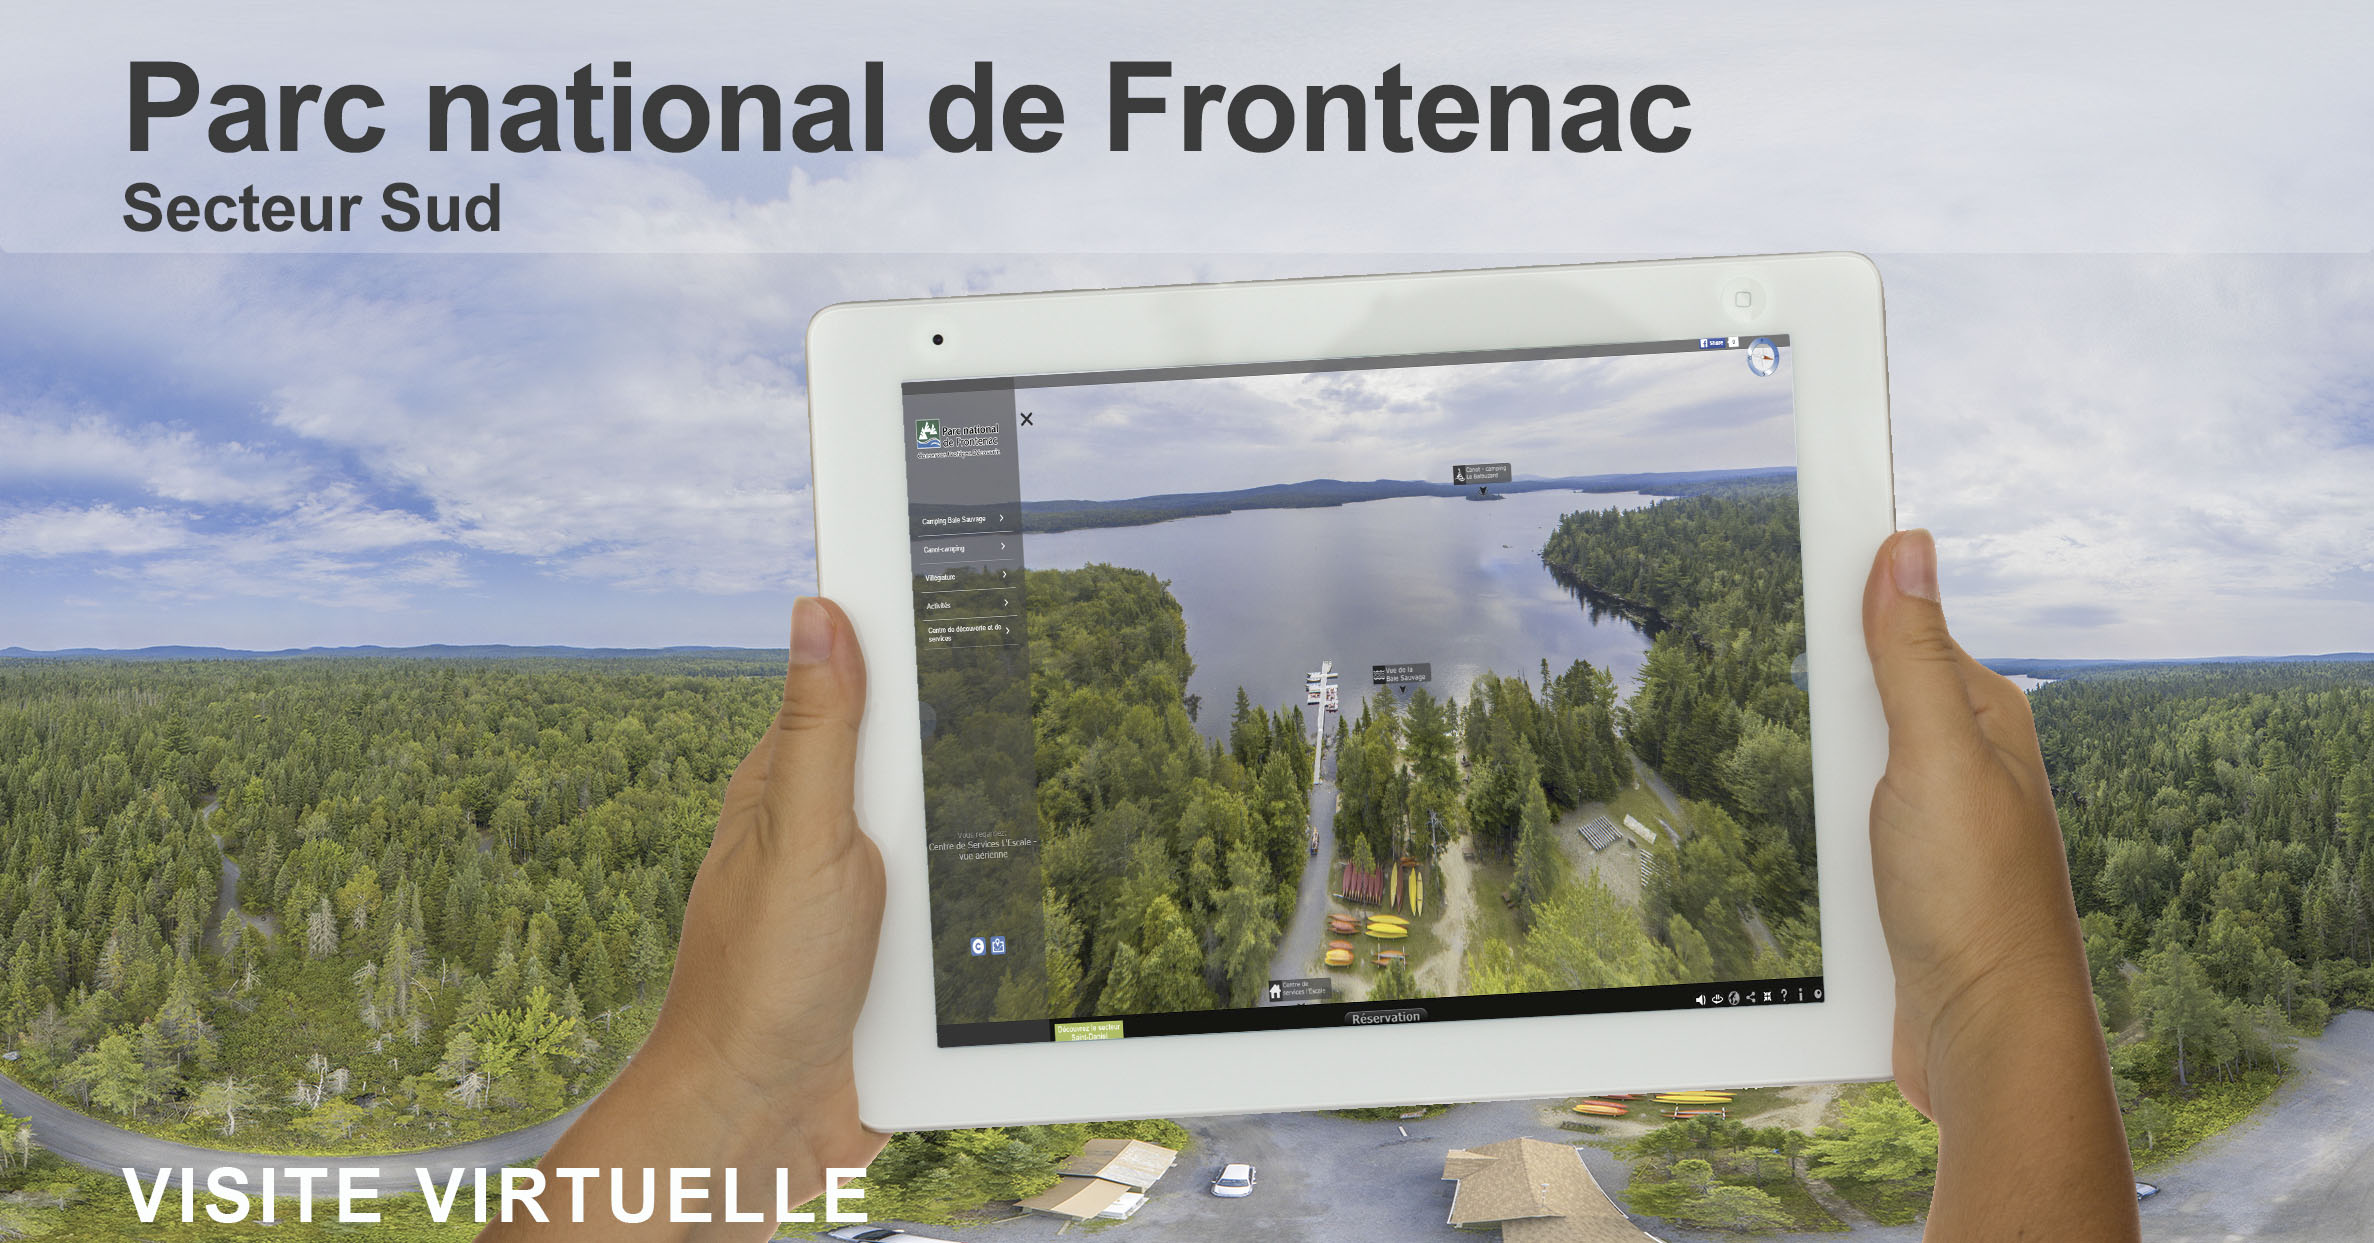 Visite virtuelle 360 degrés du Parc national de Frontenac secteur Sud